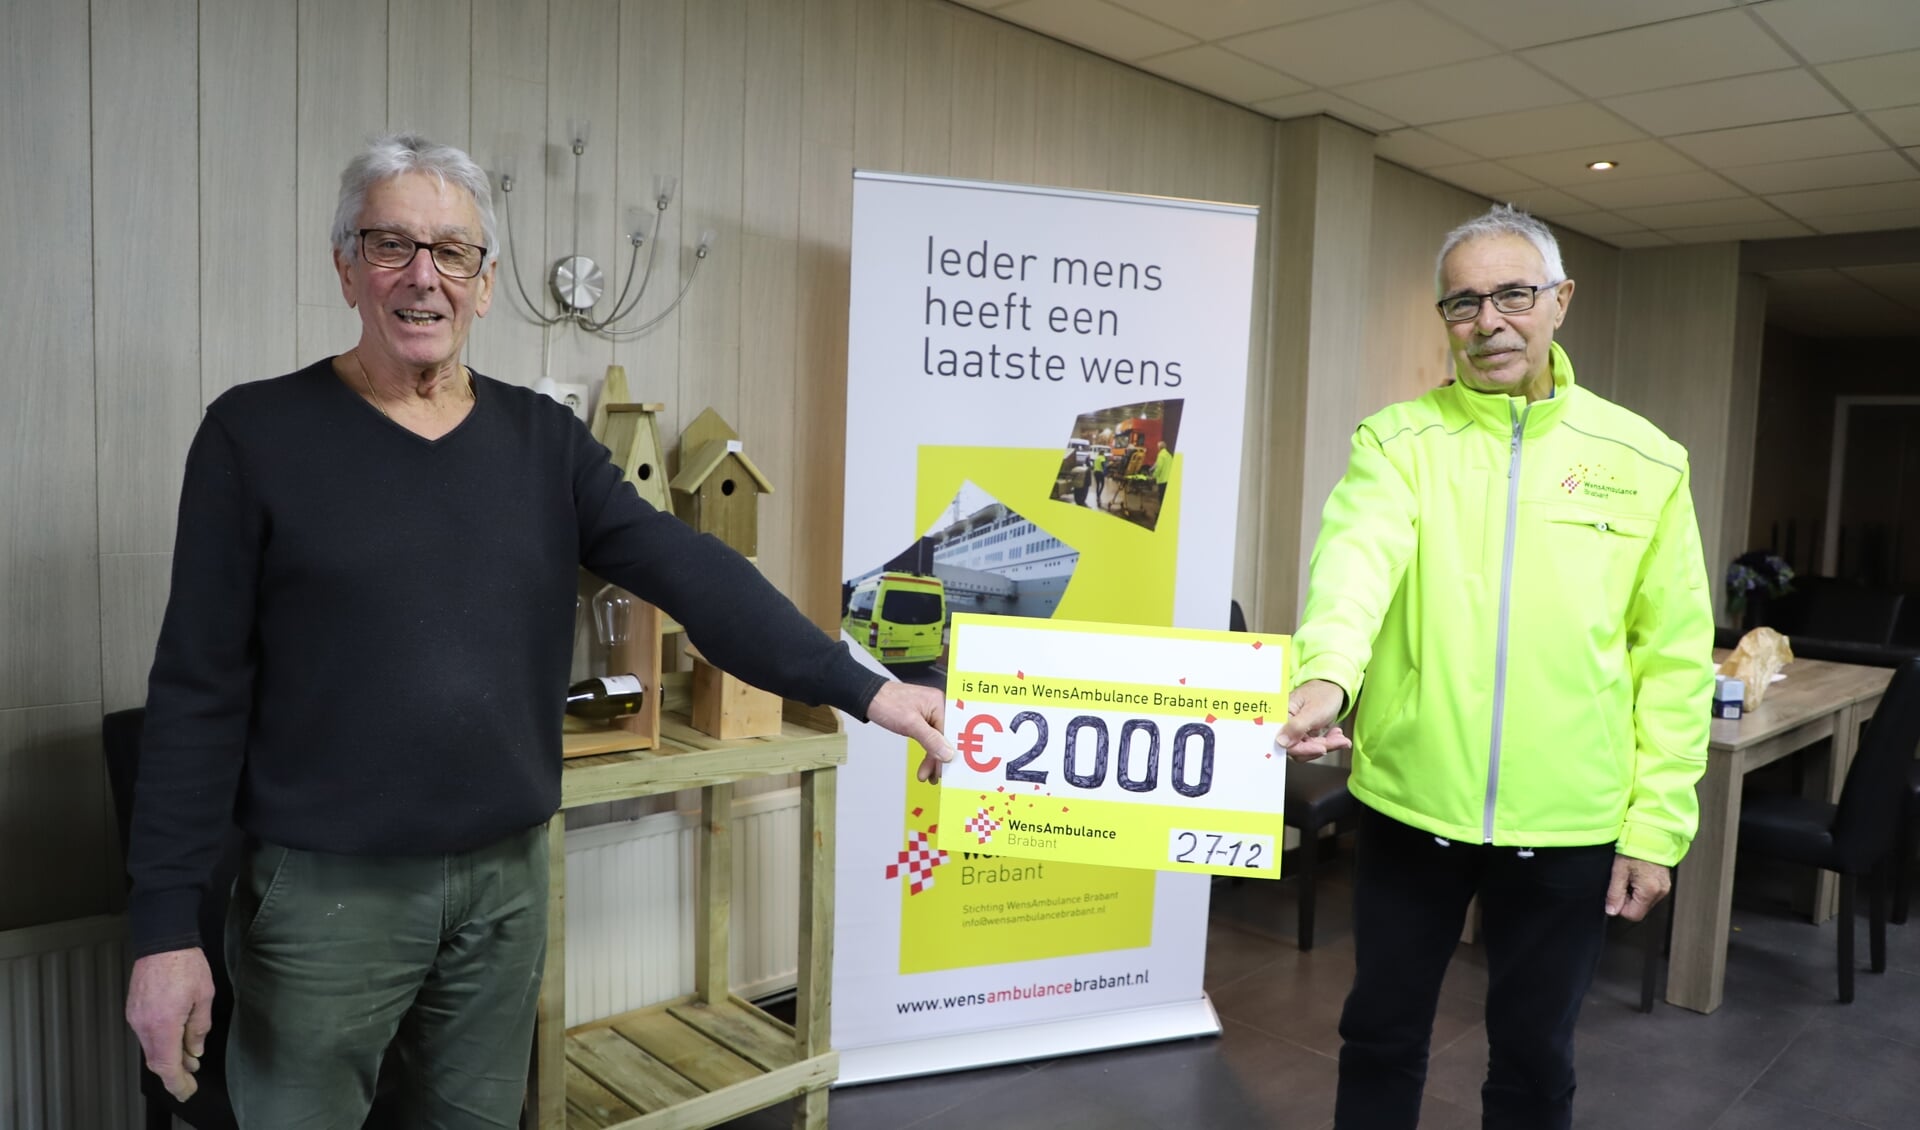 Piet Groffen overhandigt de cheque aan Peter Bogers van WensAmbulance Brabant.